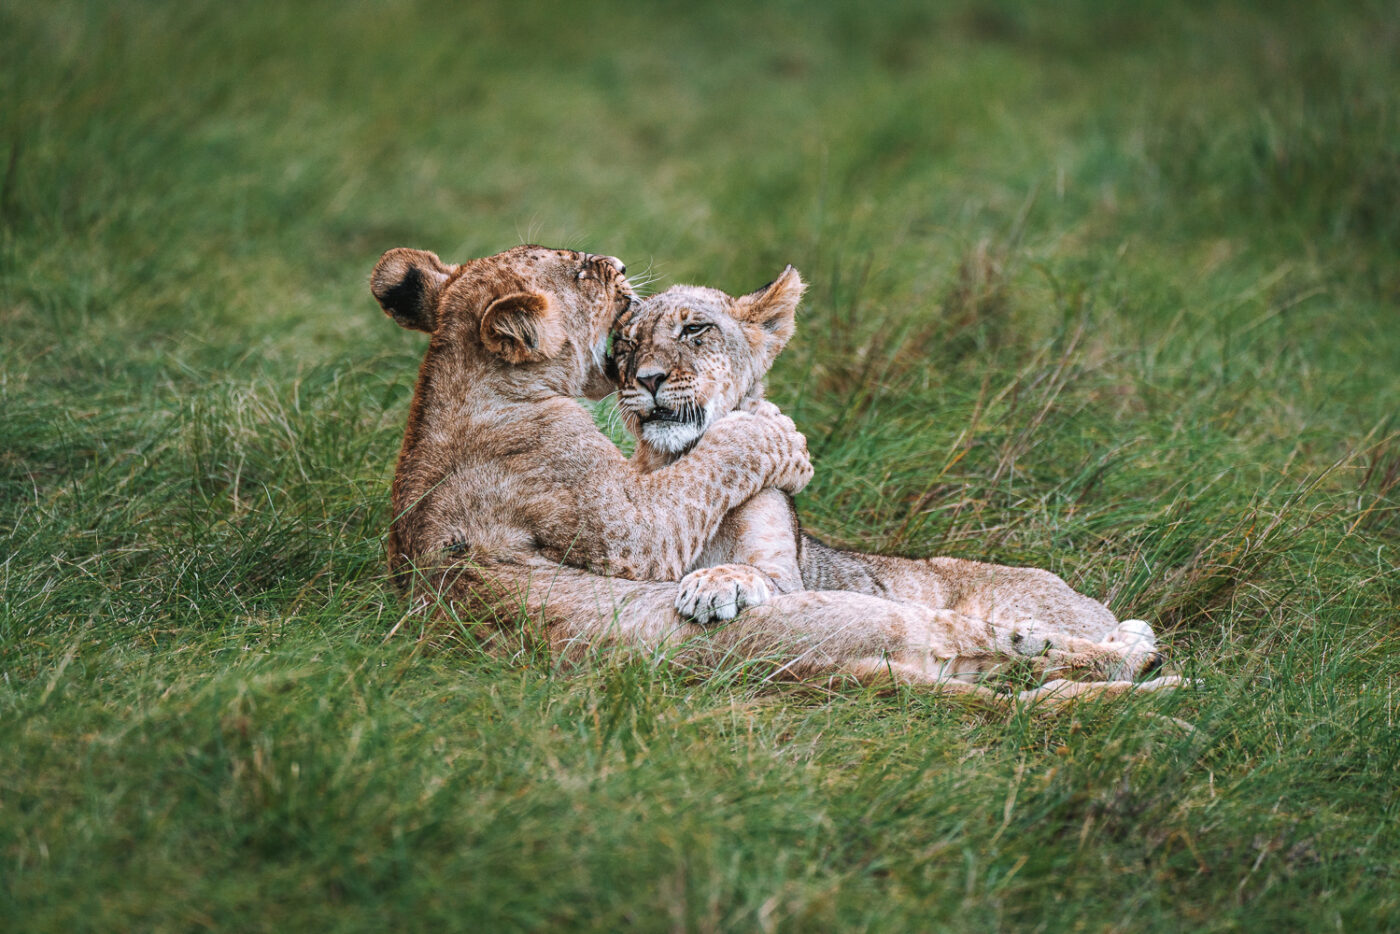 South Africa Gondwana Game Reserve safari lion cubs 02967